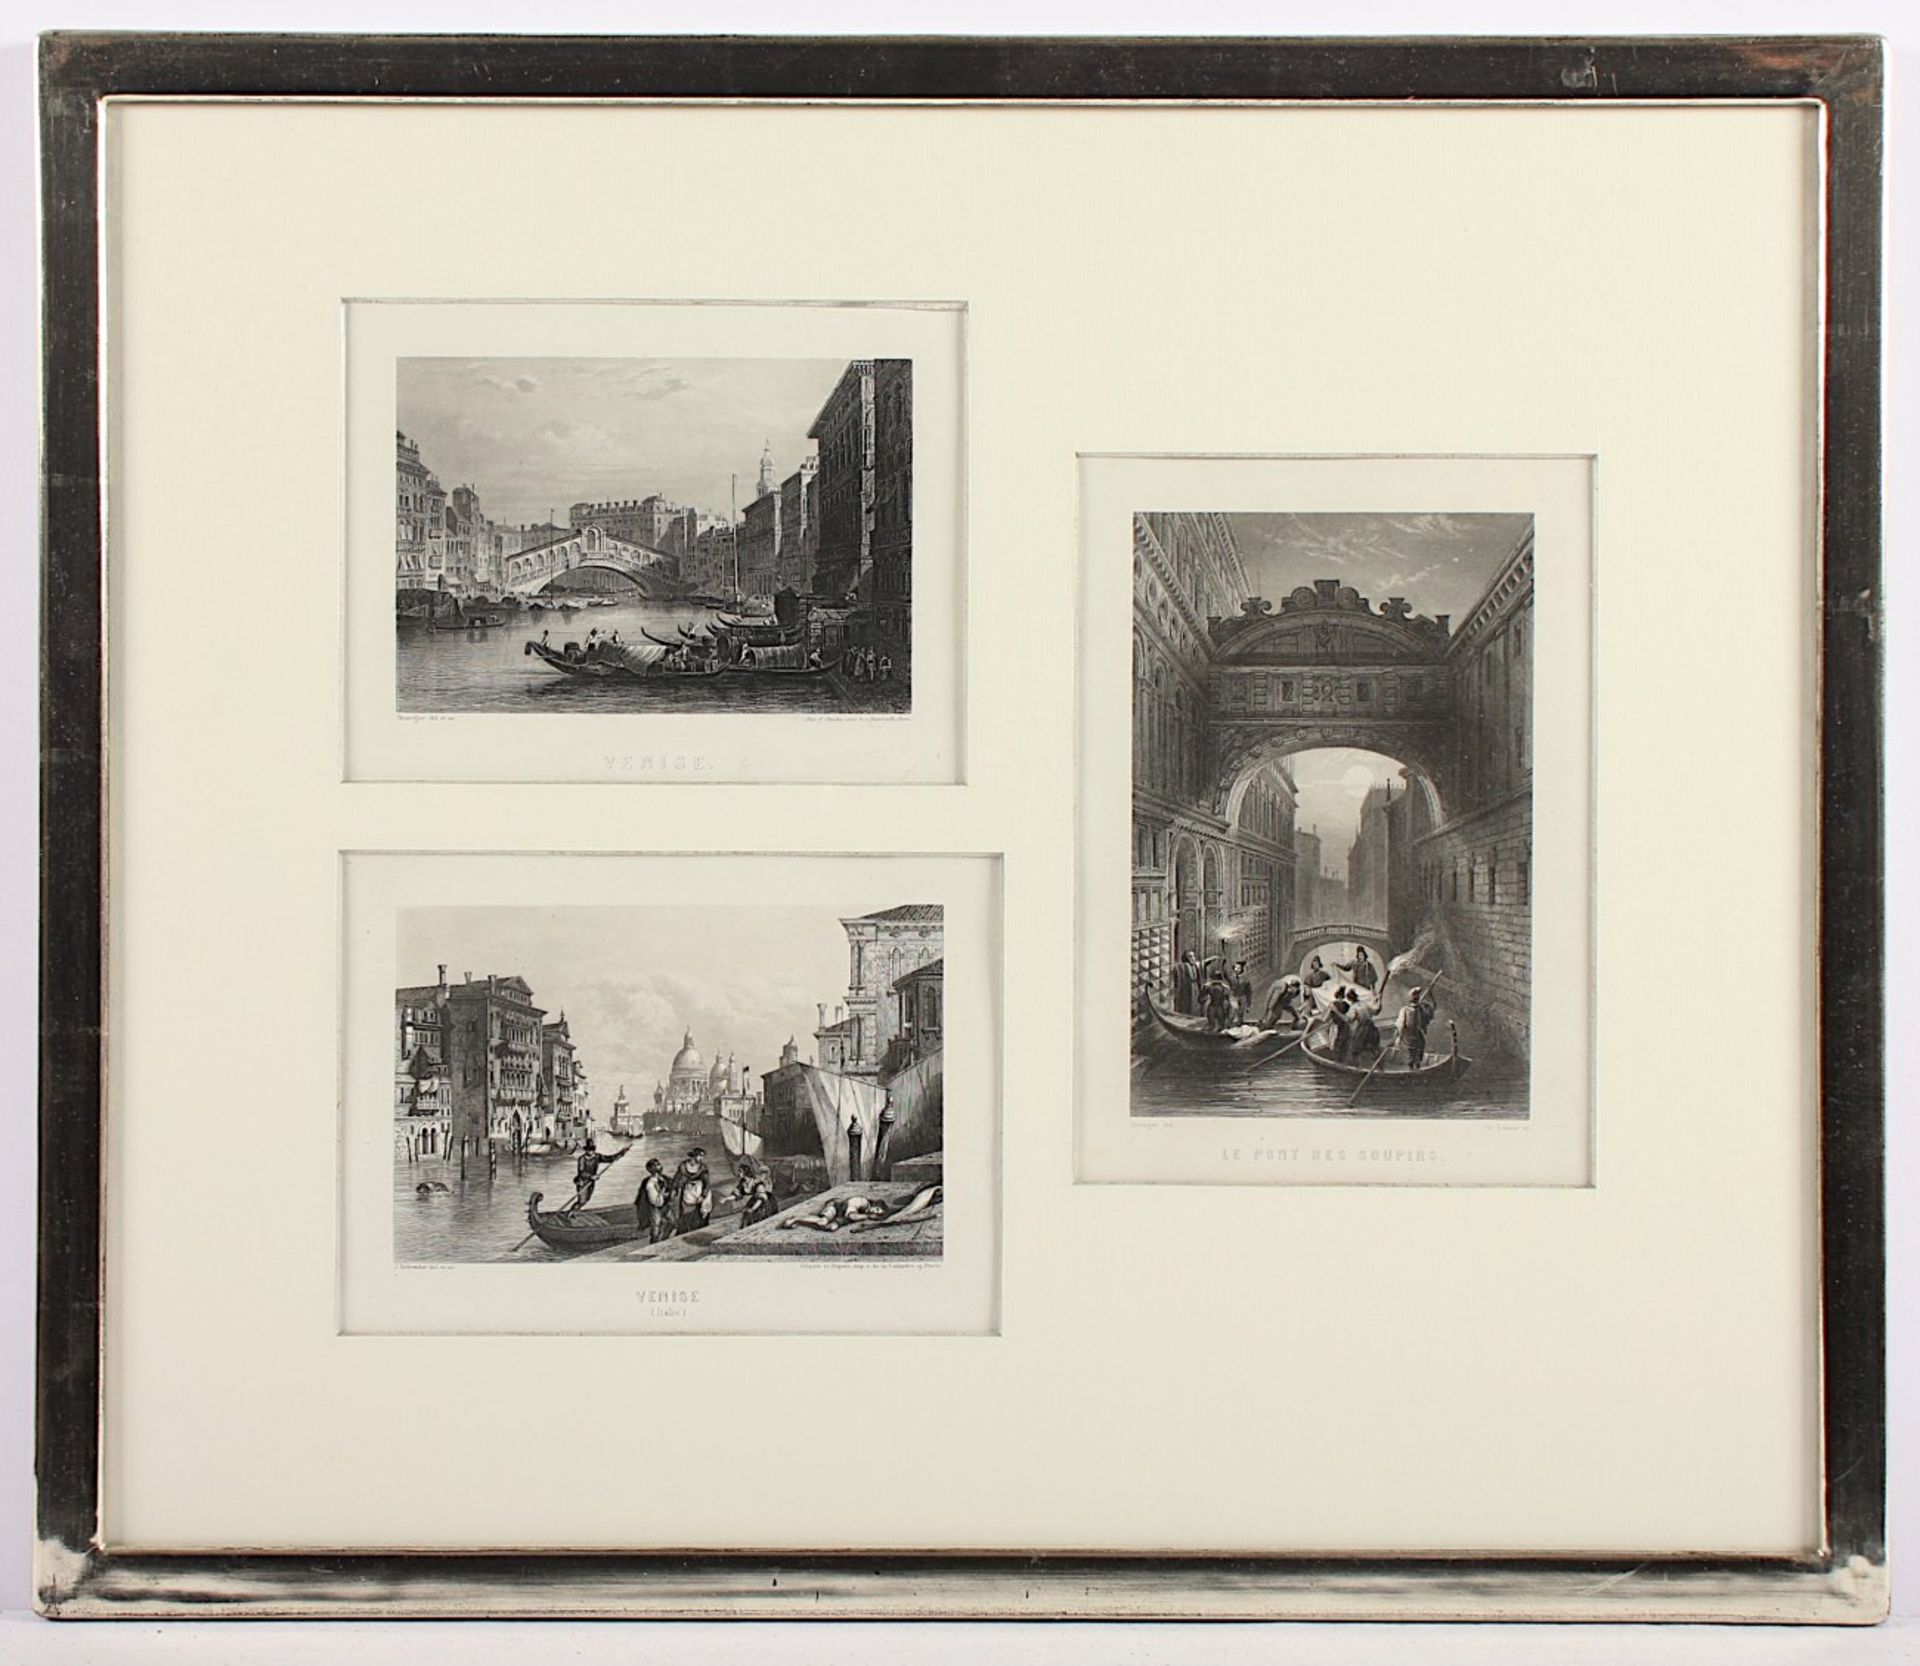 VENEDIG, 3 Ansichten, Stahlstiche, ca. 18 x 11, um 1850, R.- - -22.00 % buyer's premium on the